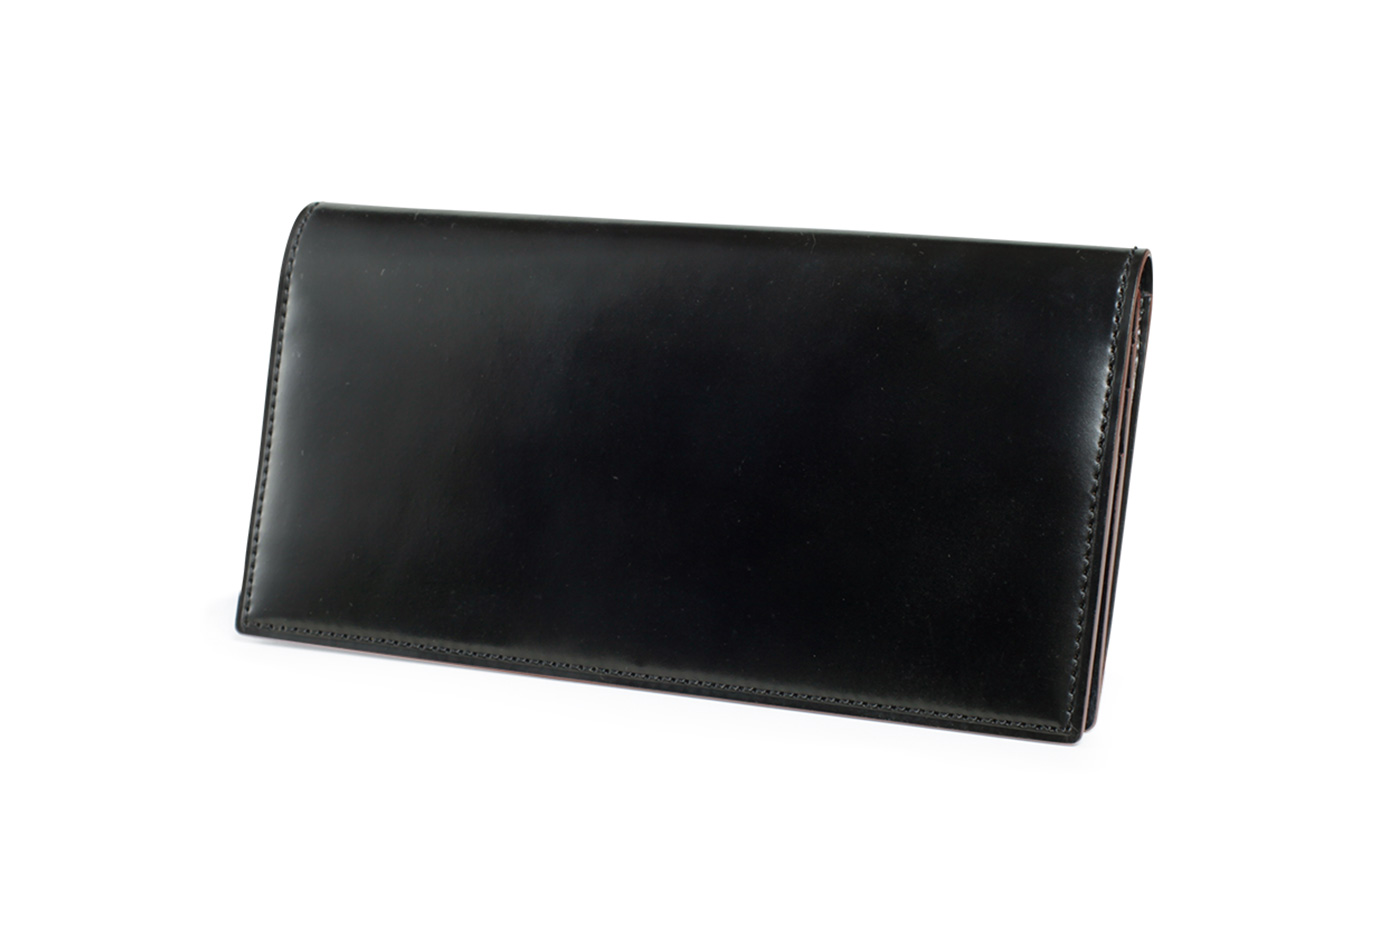 【未使用  美品】GANZO(ガンゾ)コードバン二つ折り財布